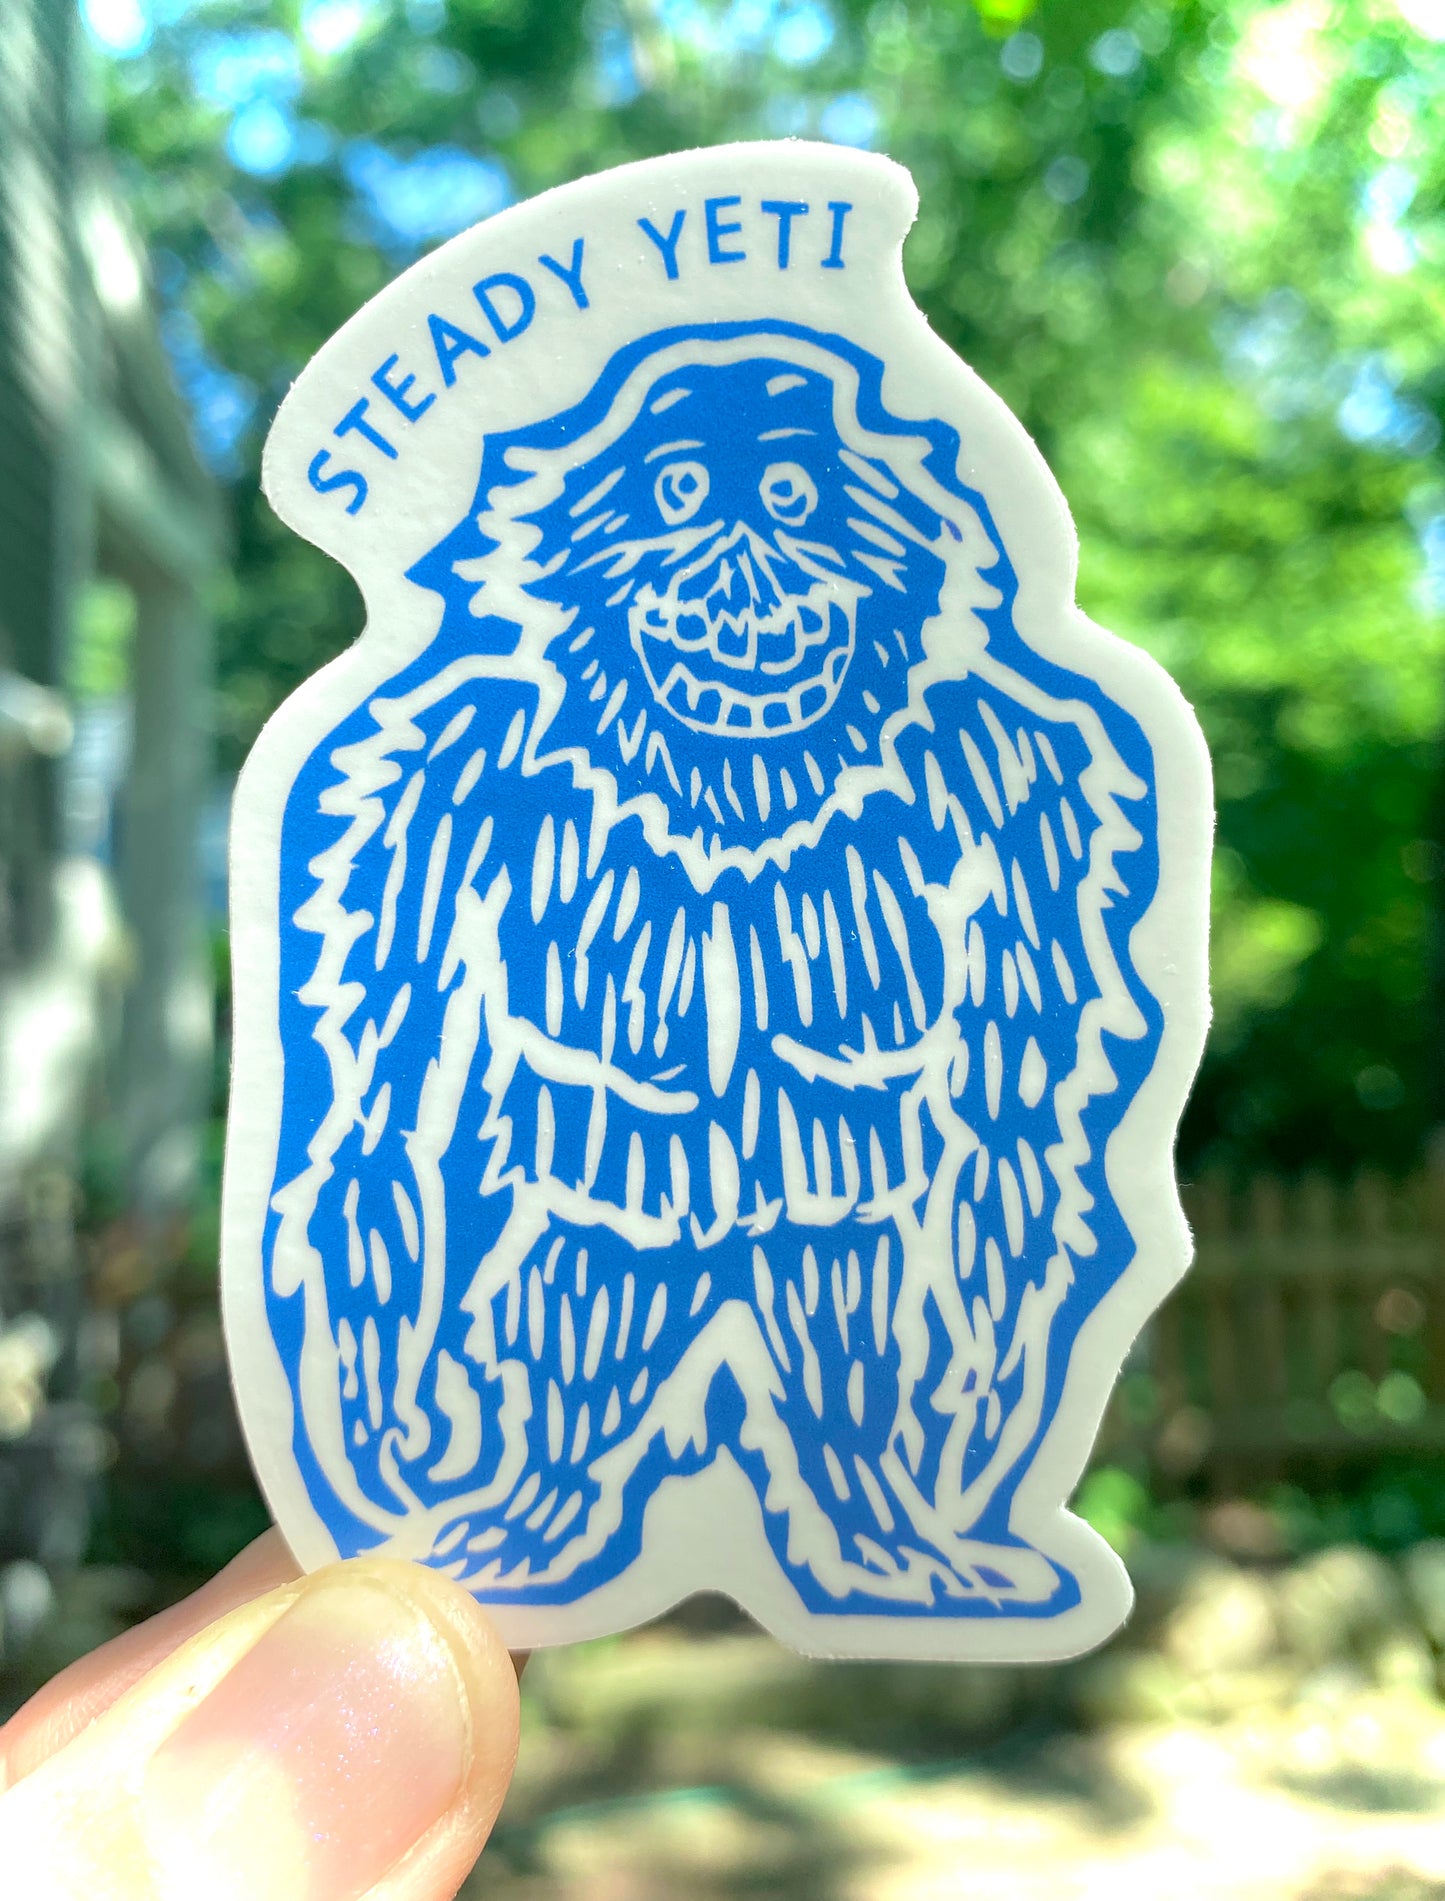 Steady Yeti vinyl sticker